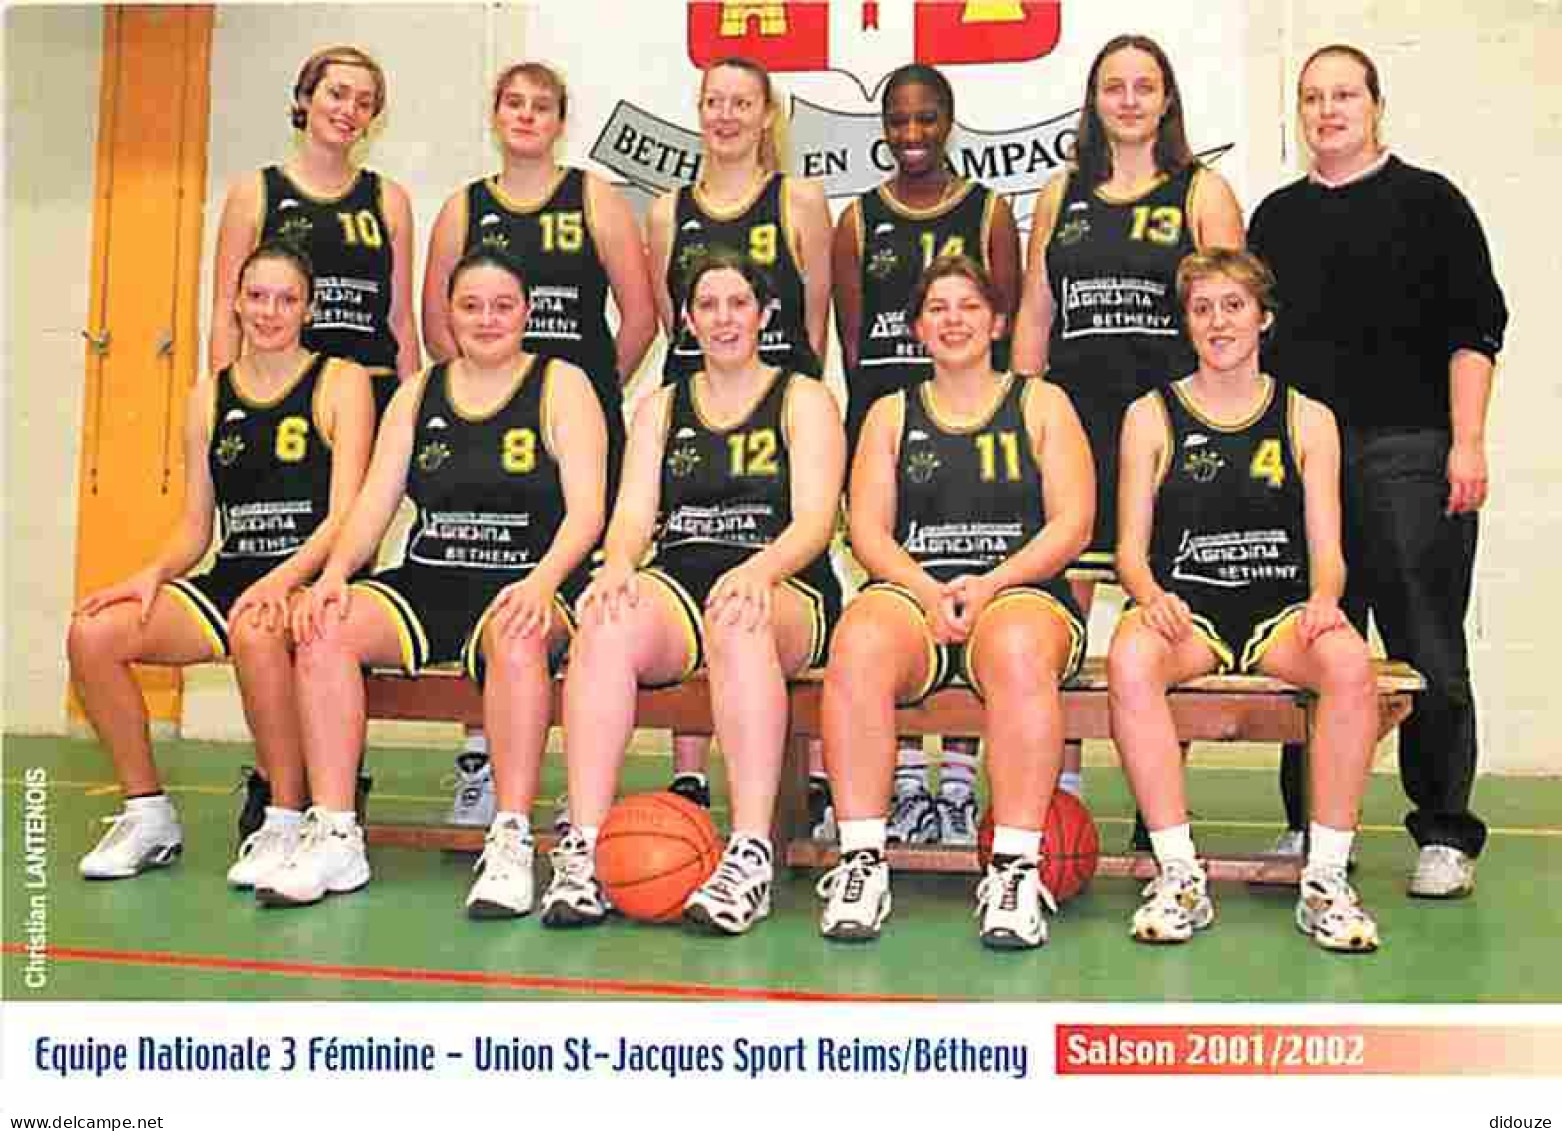 Sports - Basket Ball - Reims - Union St Jacques Sport Reims Béthemy- Equipe Nationale 3 Féminine - Saison 2001 2002 - CP - Basket-ball